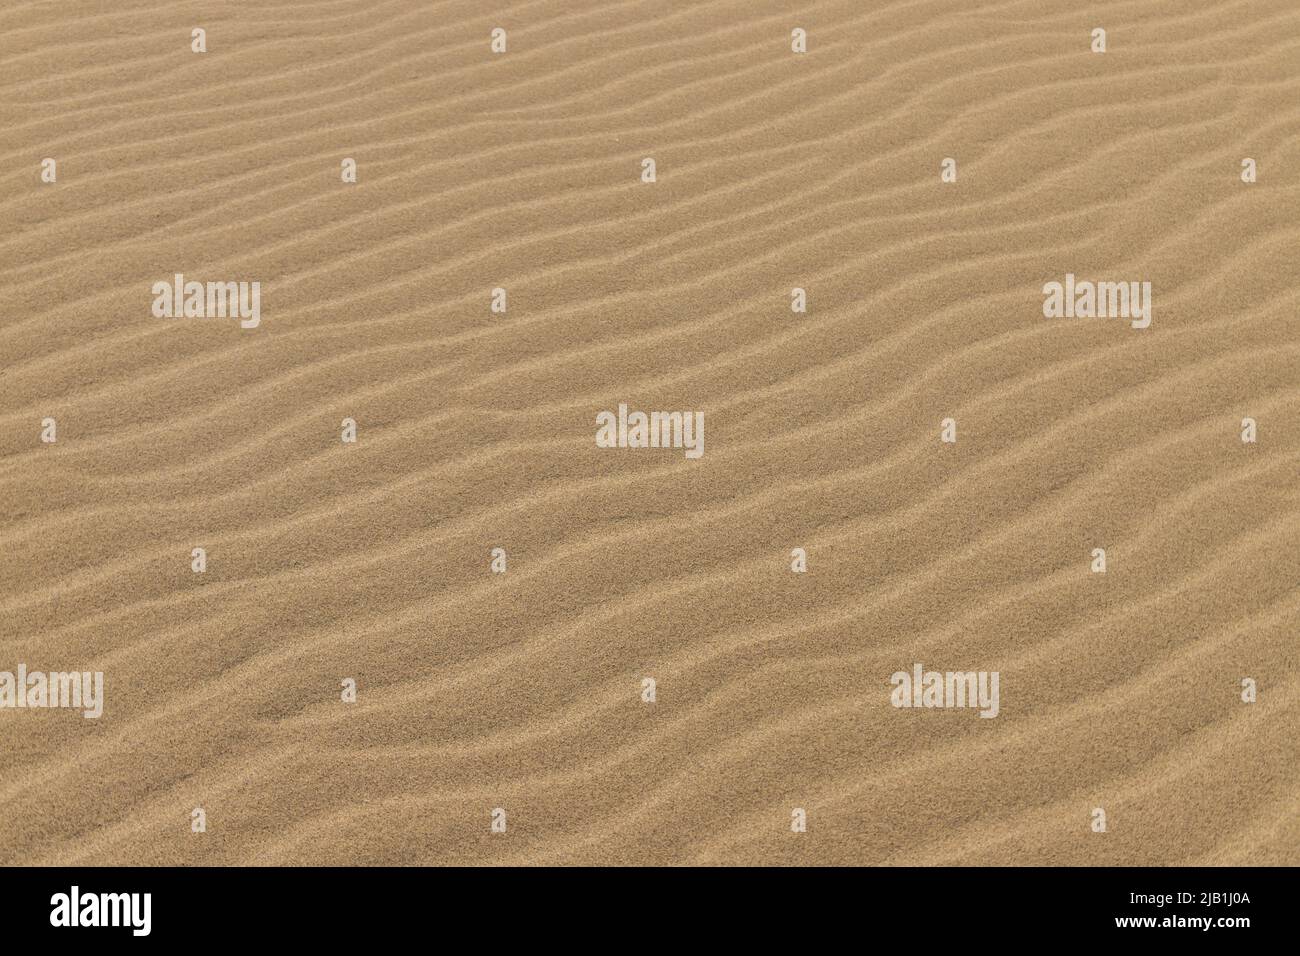 Wellenspuren in den Dürren Sanddünen im Wüstengebiet. In der Geologie sind Ripplemarken sedimentäre Strukturen und deuten auf eine Agitation durch Wasser oder Wind hin Stockfoto